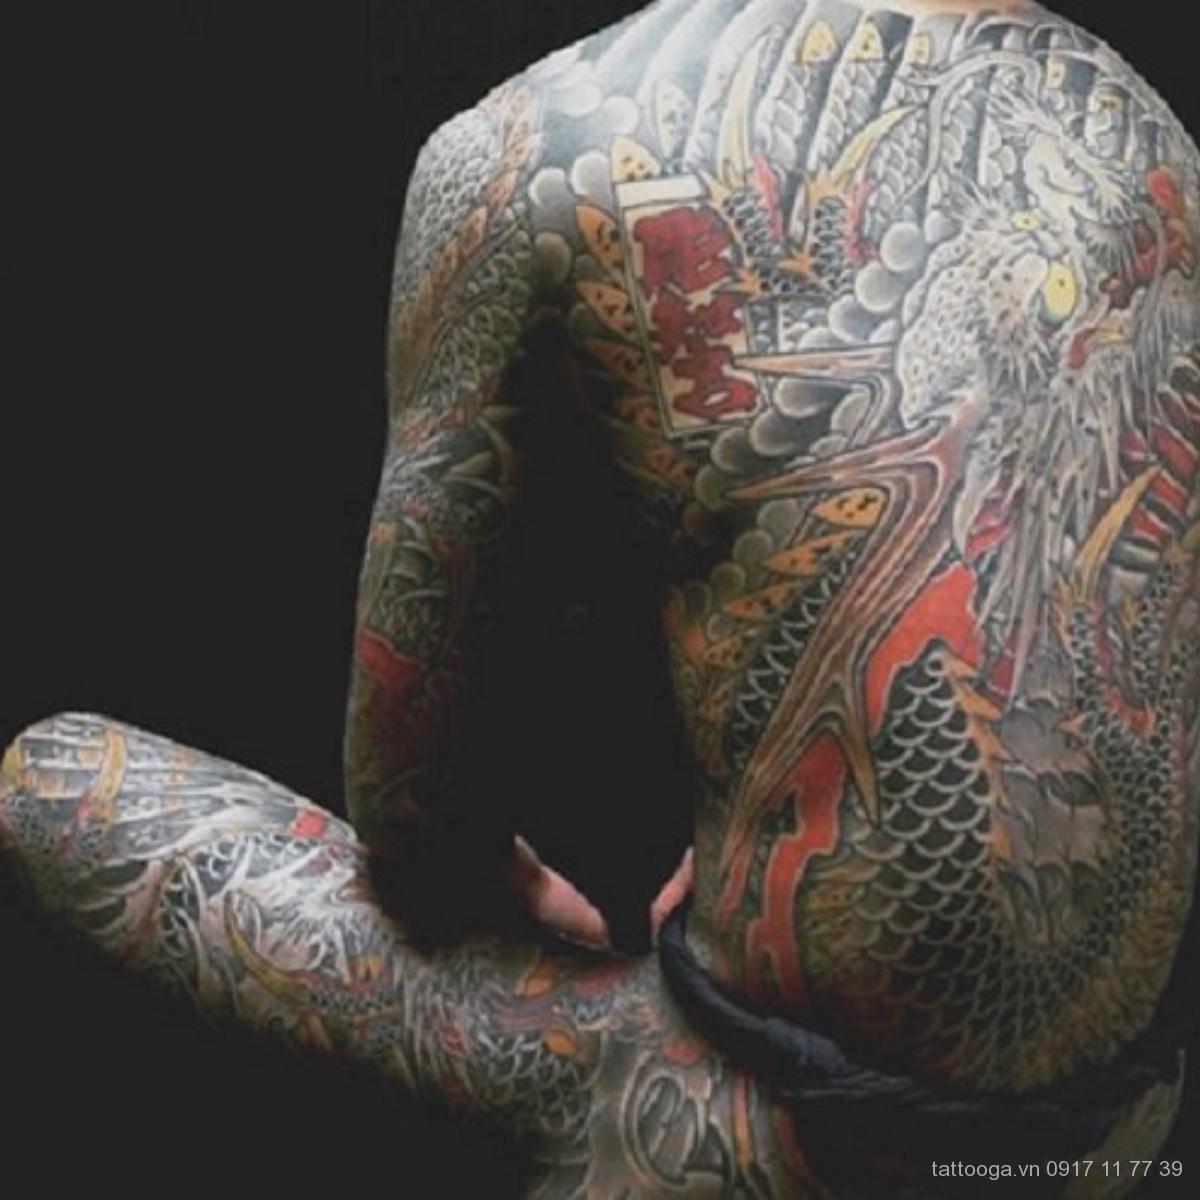 Dragon Tattoo by Trung Tadashi  HÌNH XĂM RỒNG nghệ thuật  YouTube